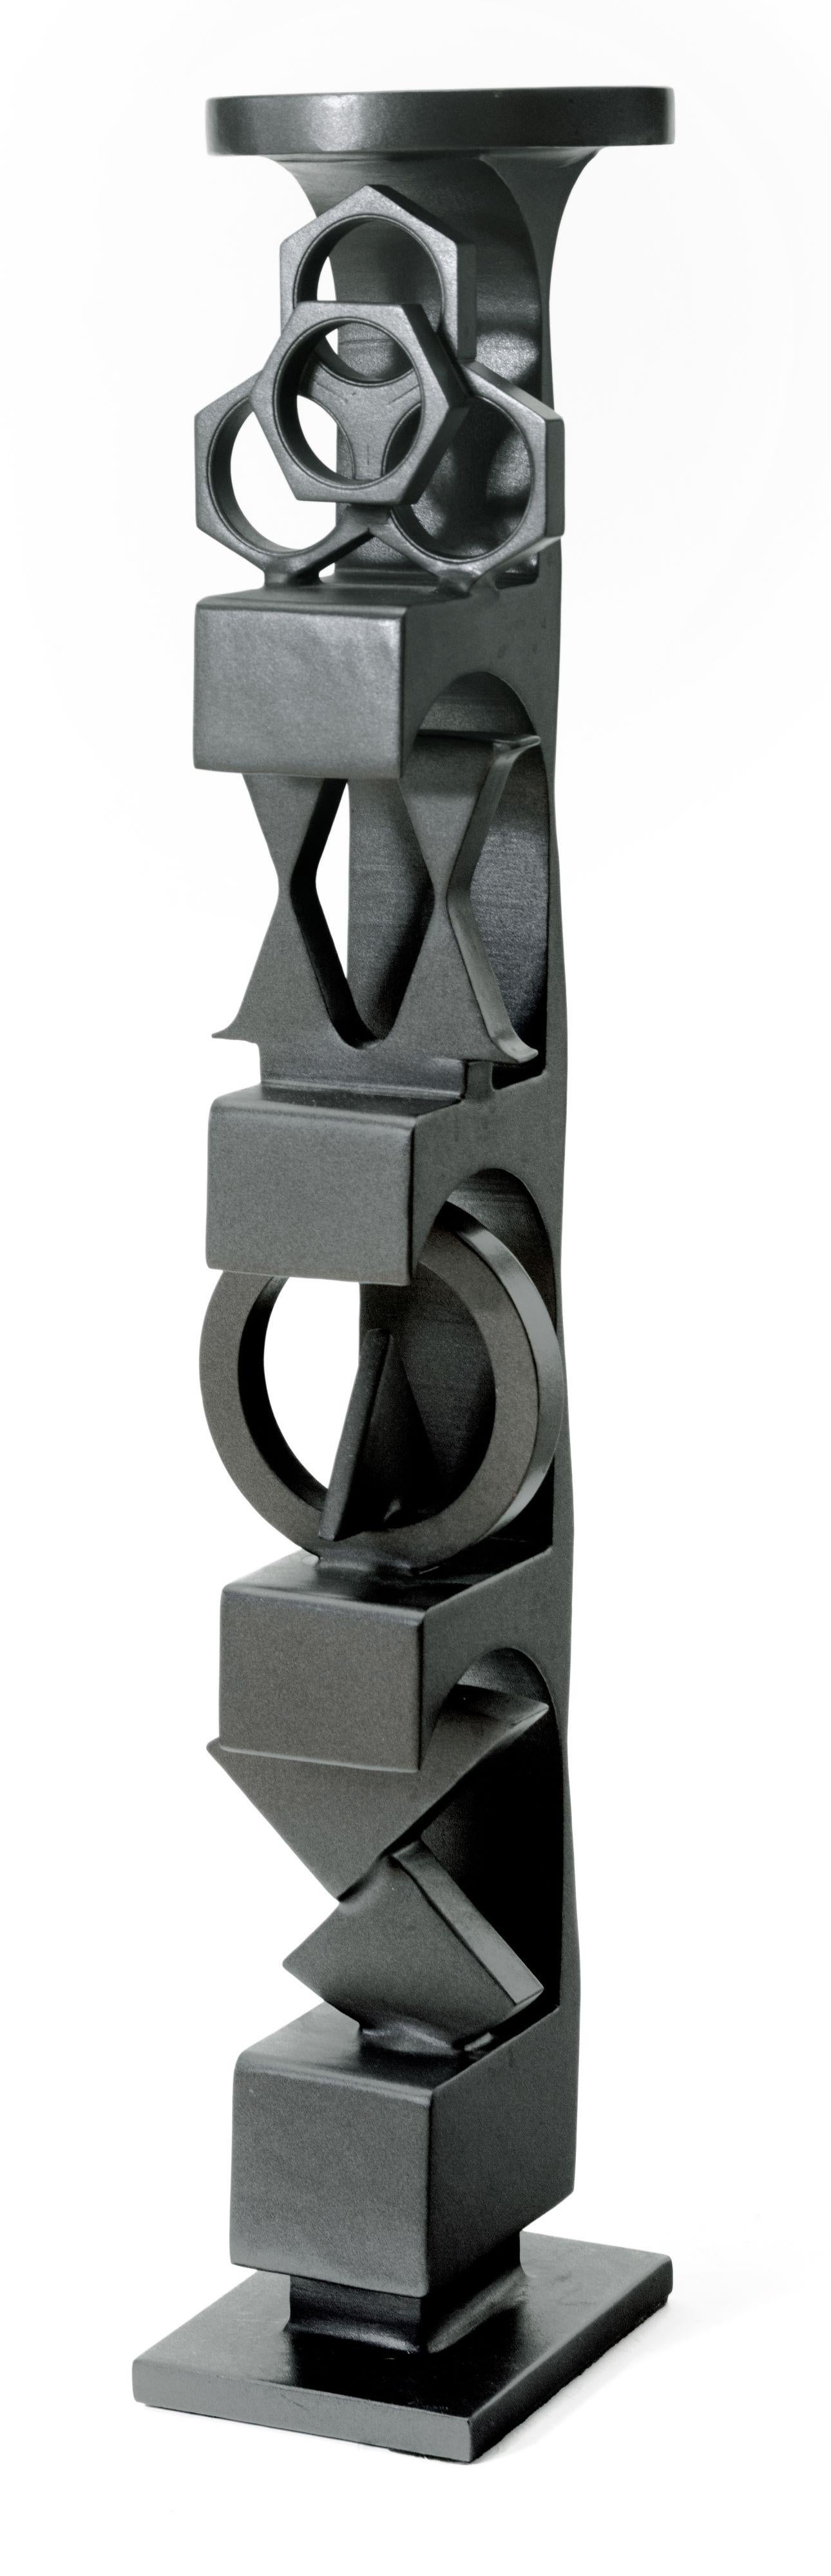 "To Each His Own" ist eine bemalte Stahlskulptur von Ralph Wickstrom aus dem Jahr 2000. Die Skulptur hat die Form eines Turms mit vier Ebenen, wobei jede Ebene eine eigene Formensprache aufweist. Am deutlichsten ist die Form der Schrauben auf der